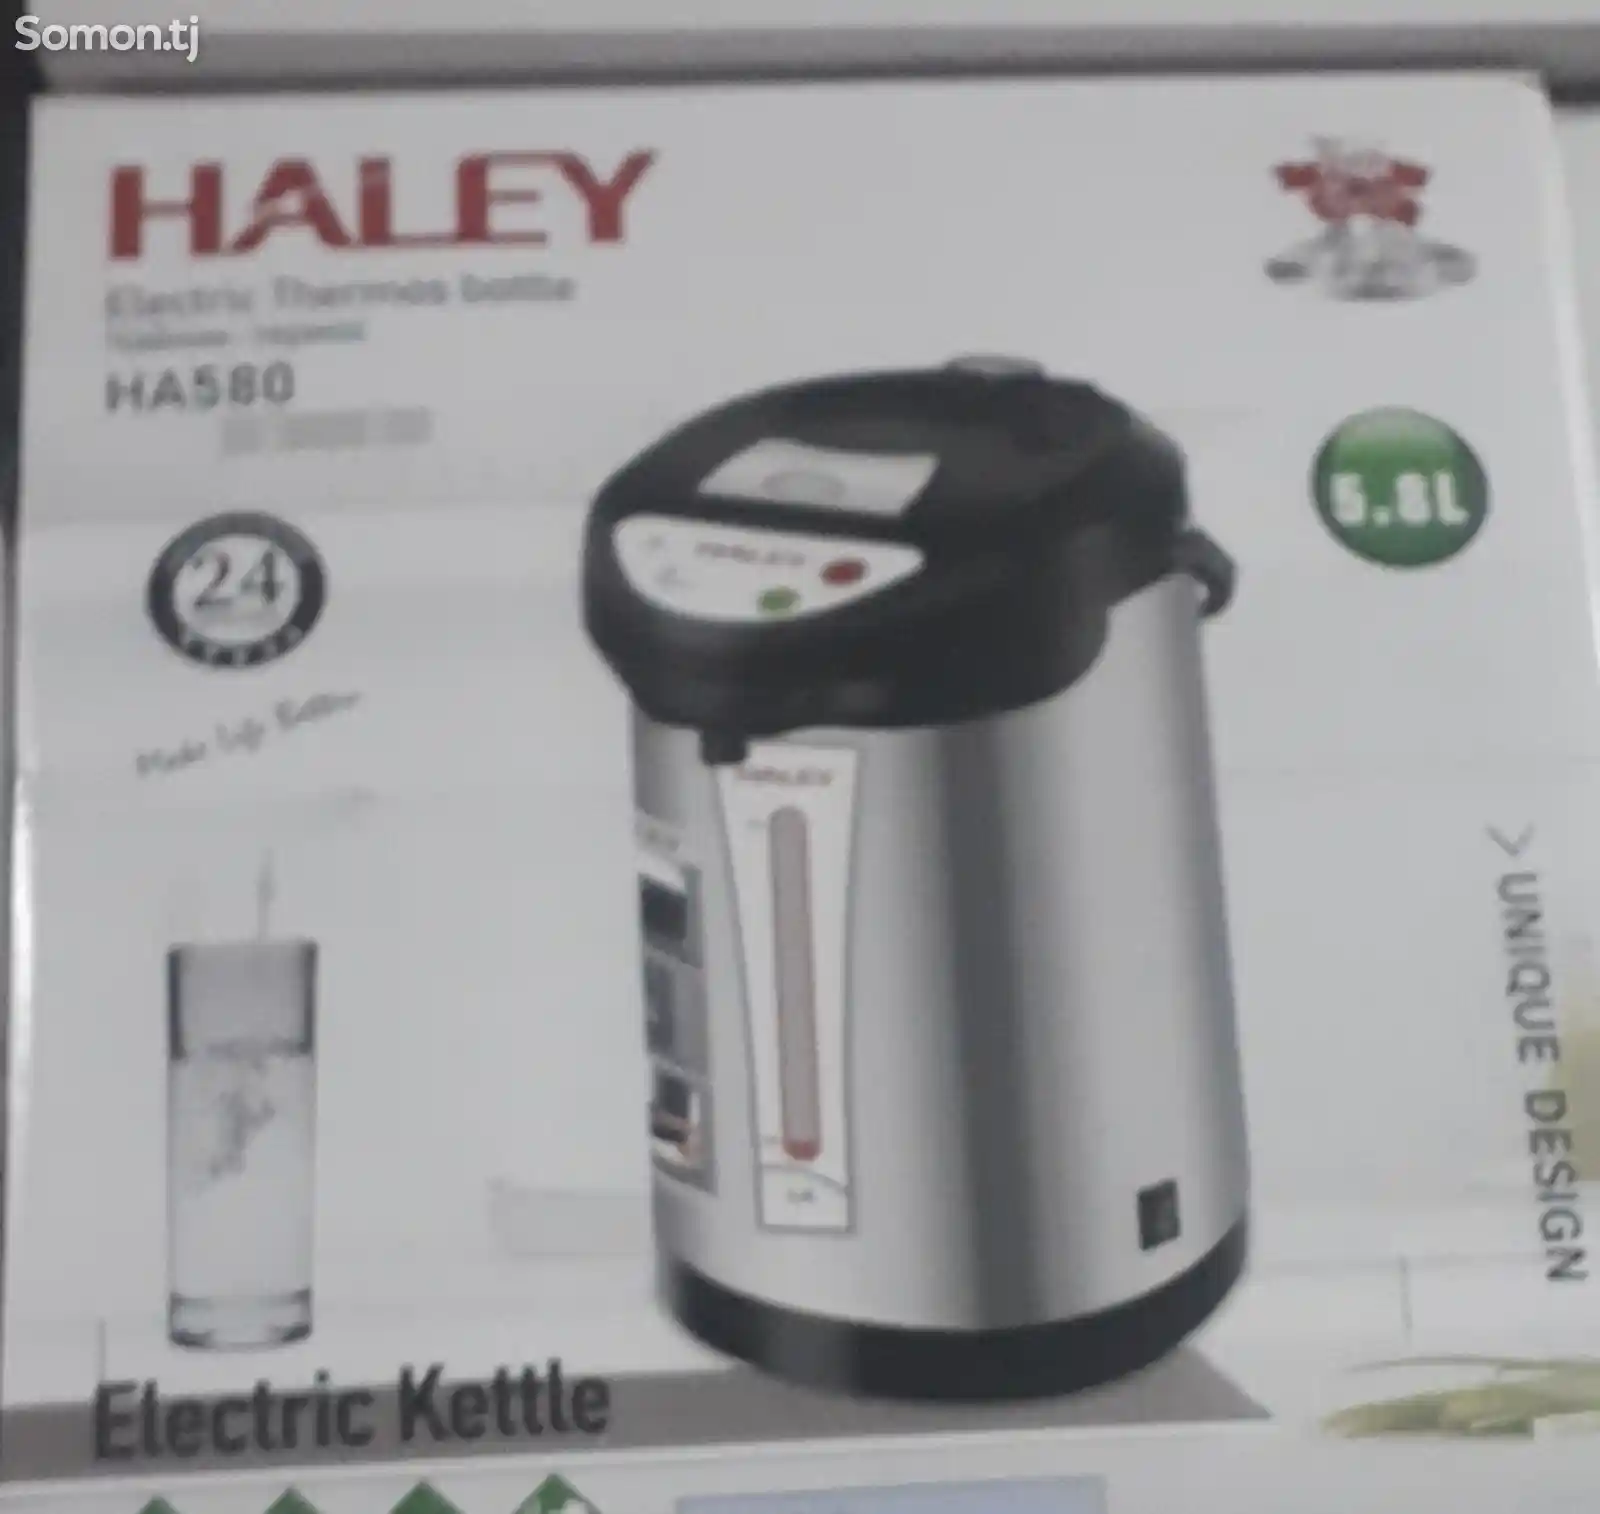 Термопот Haley 5.8л HA-580